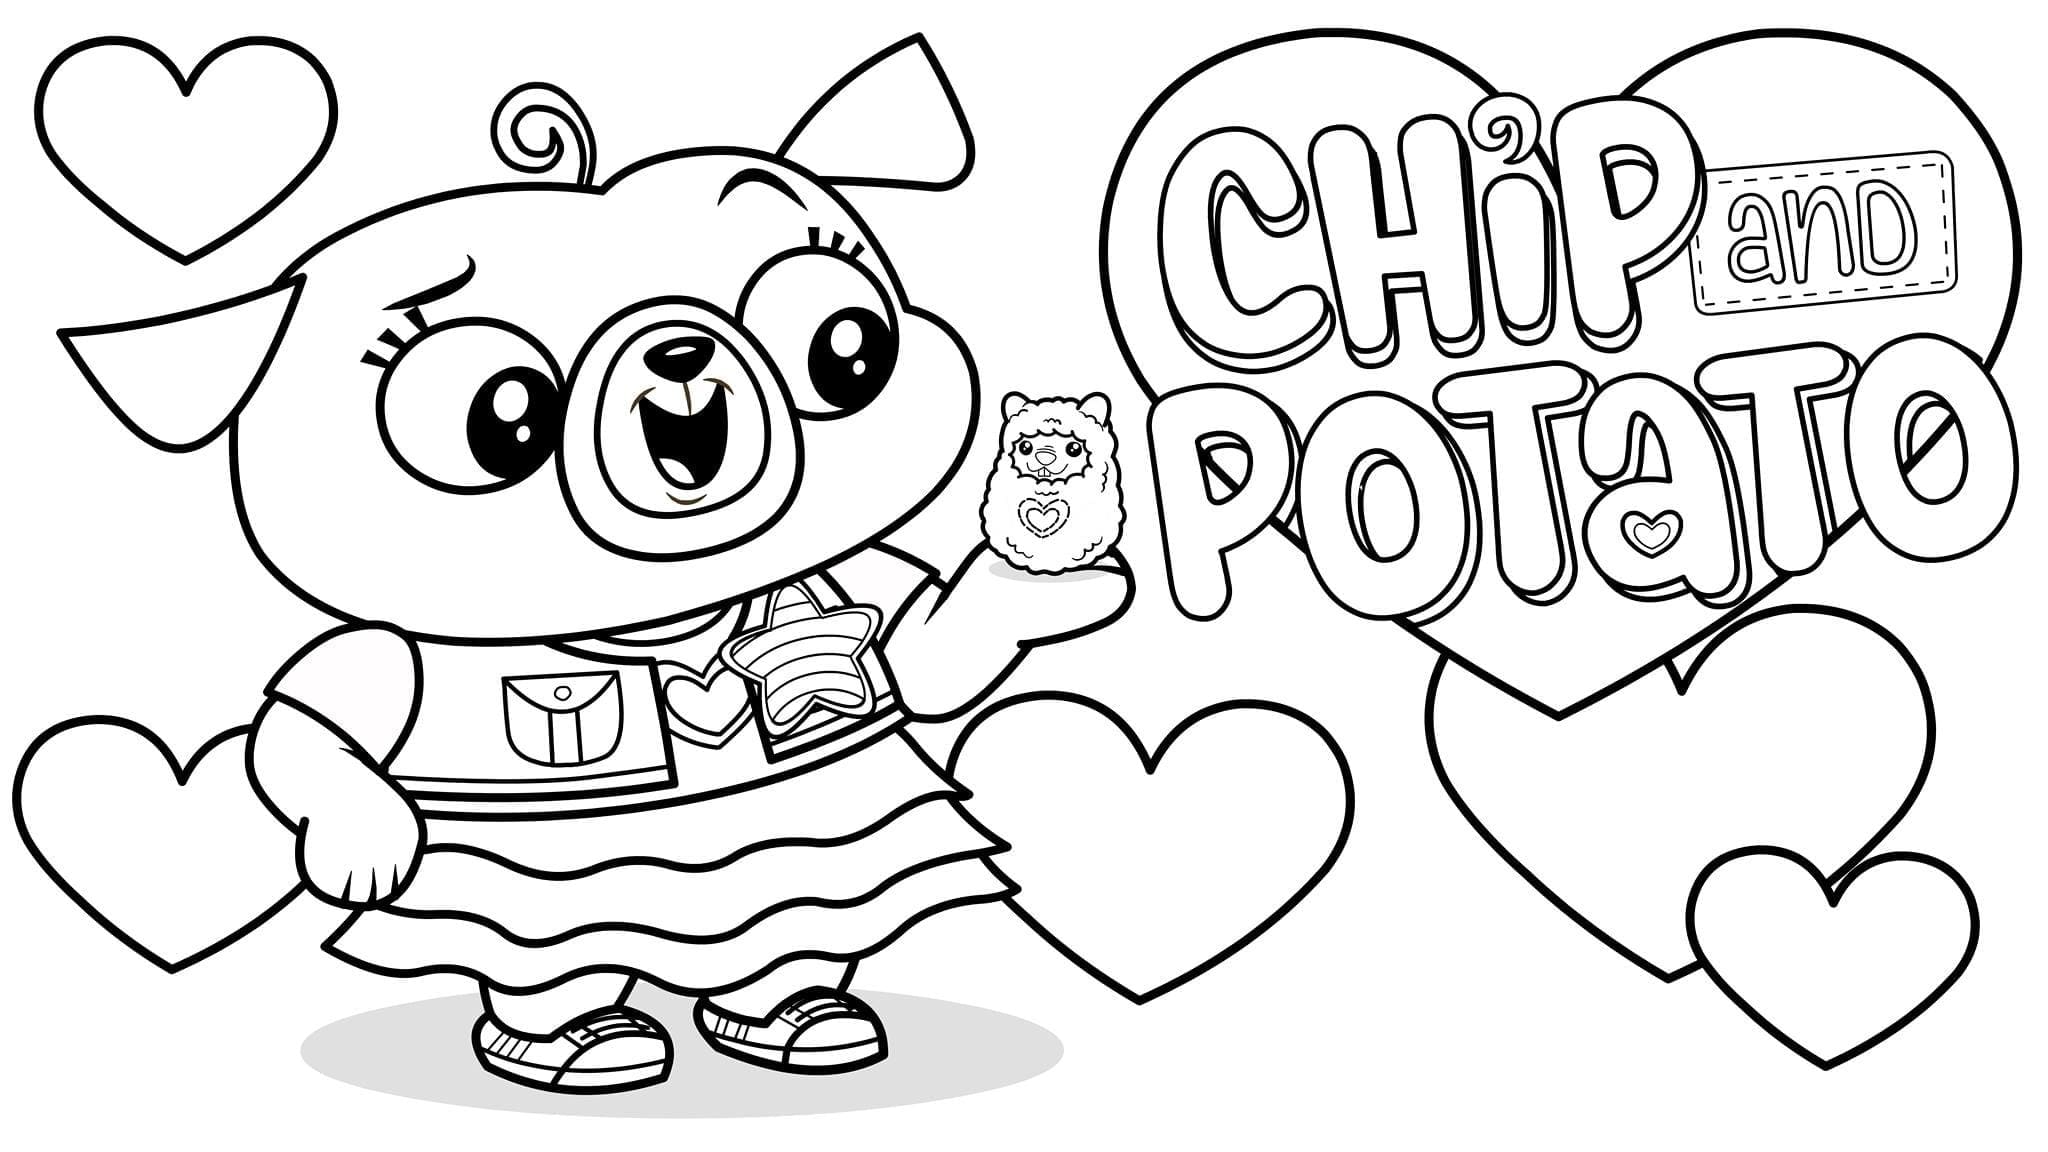 Desenhos do Chip e Potato para Colorir - 50 imagens grátis para impressão